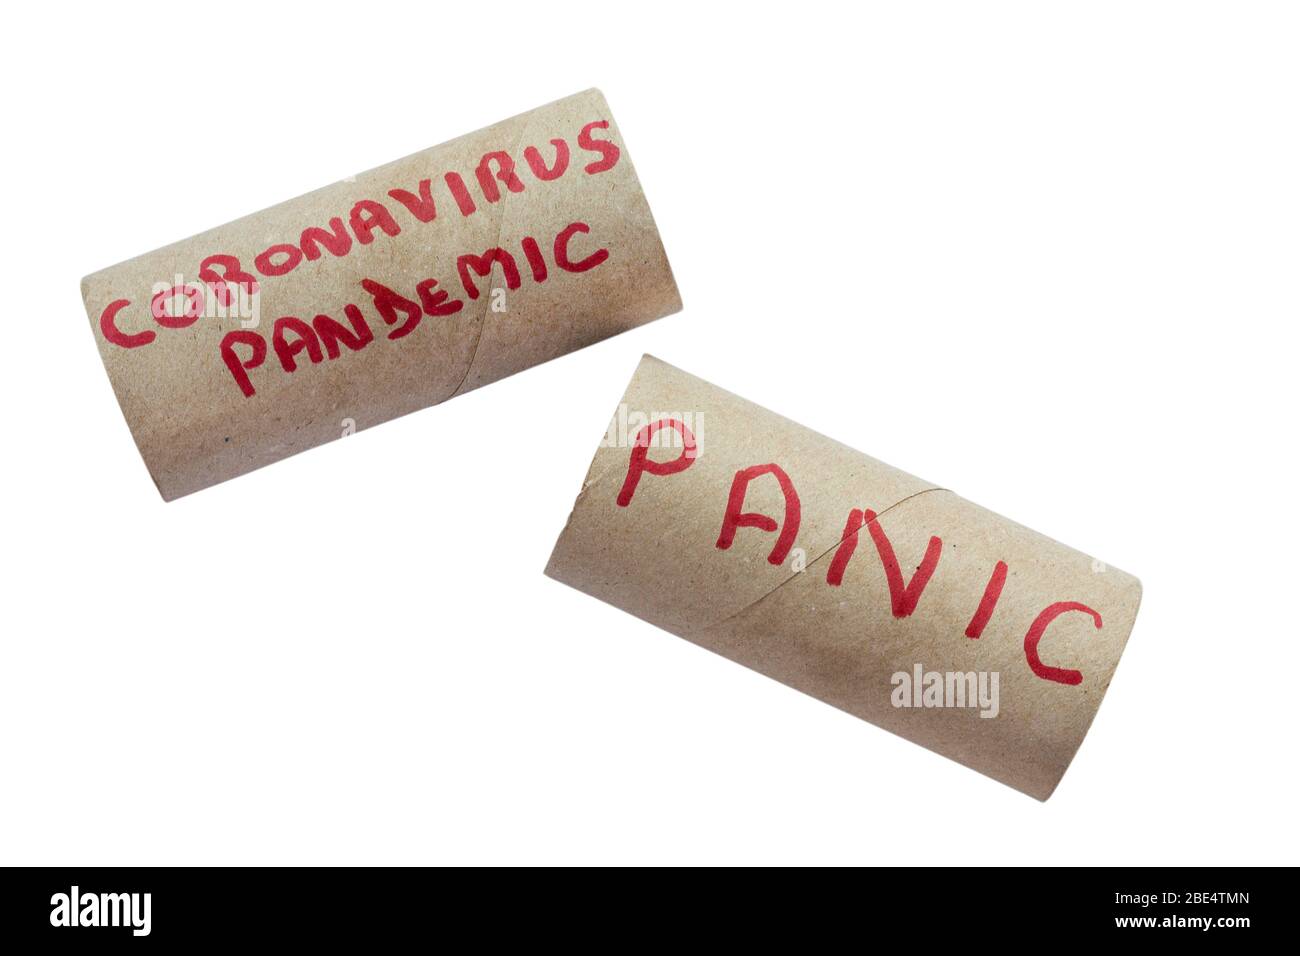 Pandémie de coronavirus et panique écrites sur les tubes de rouleau de toilettes - concept de panique d'achat de rouleaux de toilettes que les gens panique Achetez des articles essentiels au Royaume-Uni Banque D'Images